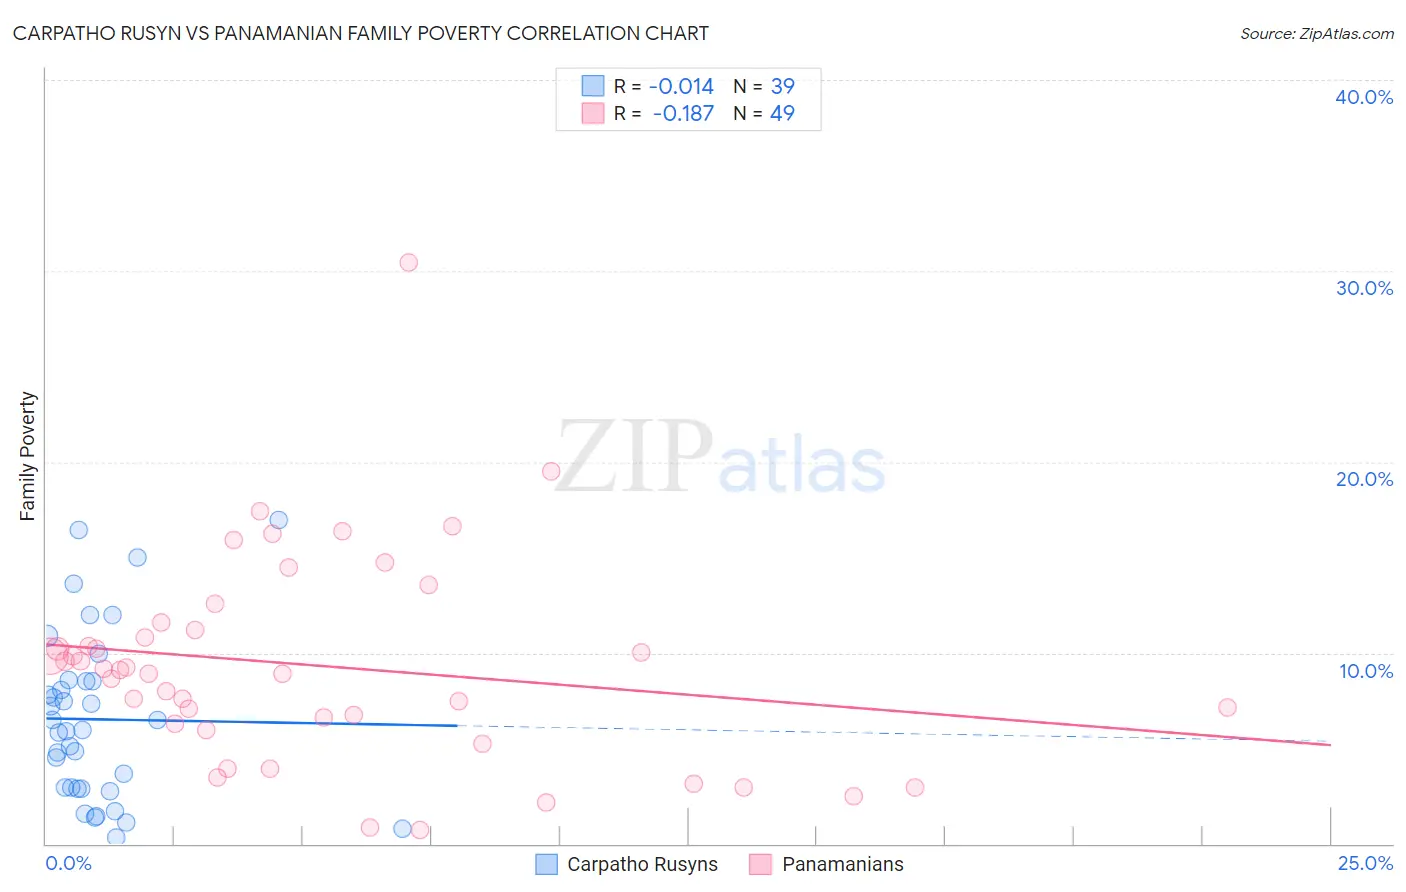 Carpatho Rusyn vs Panamanian Family Poverty